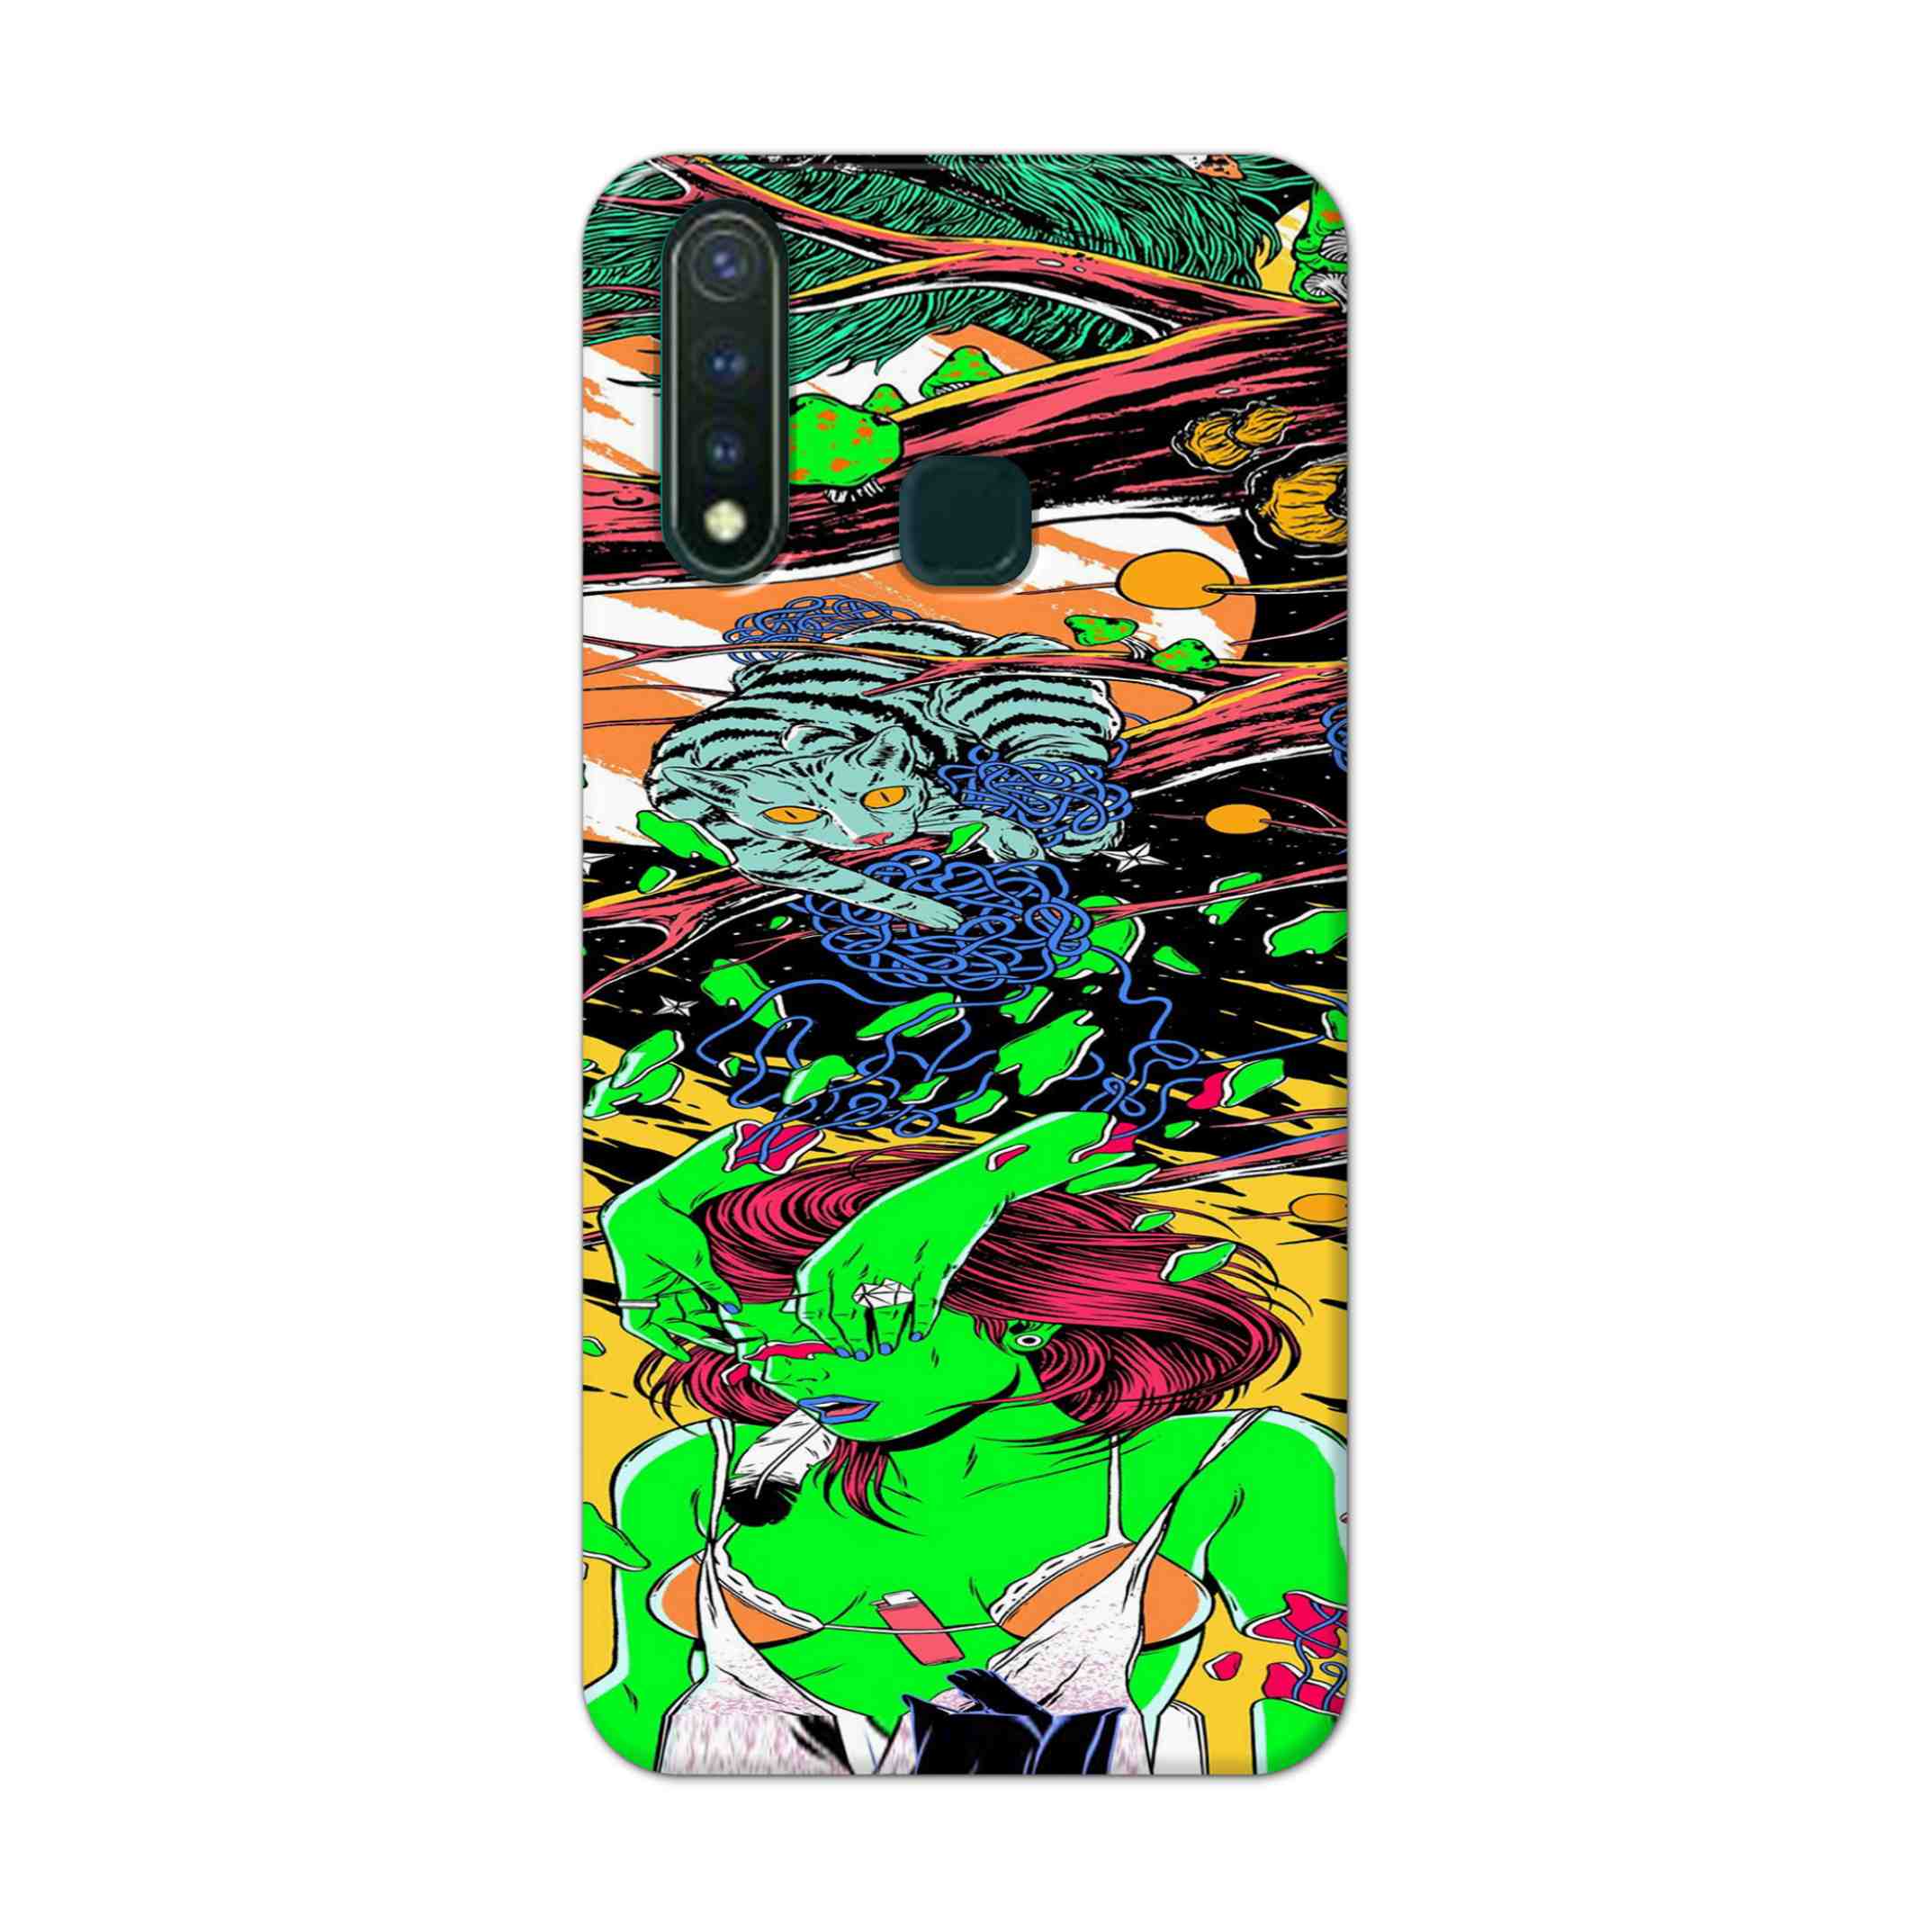 Buy Green Girl Art Hard Back Mobile Phone Case Cover For Vivo U20 Online